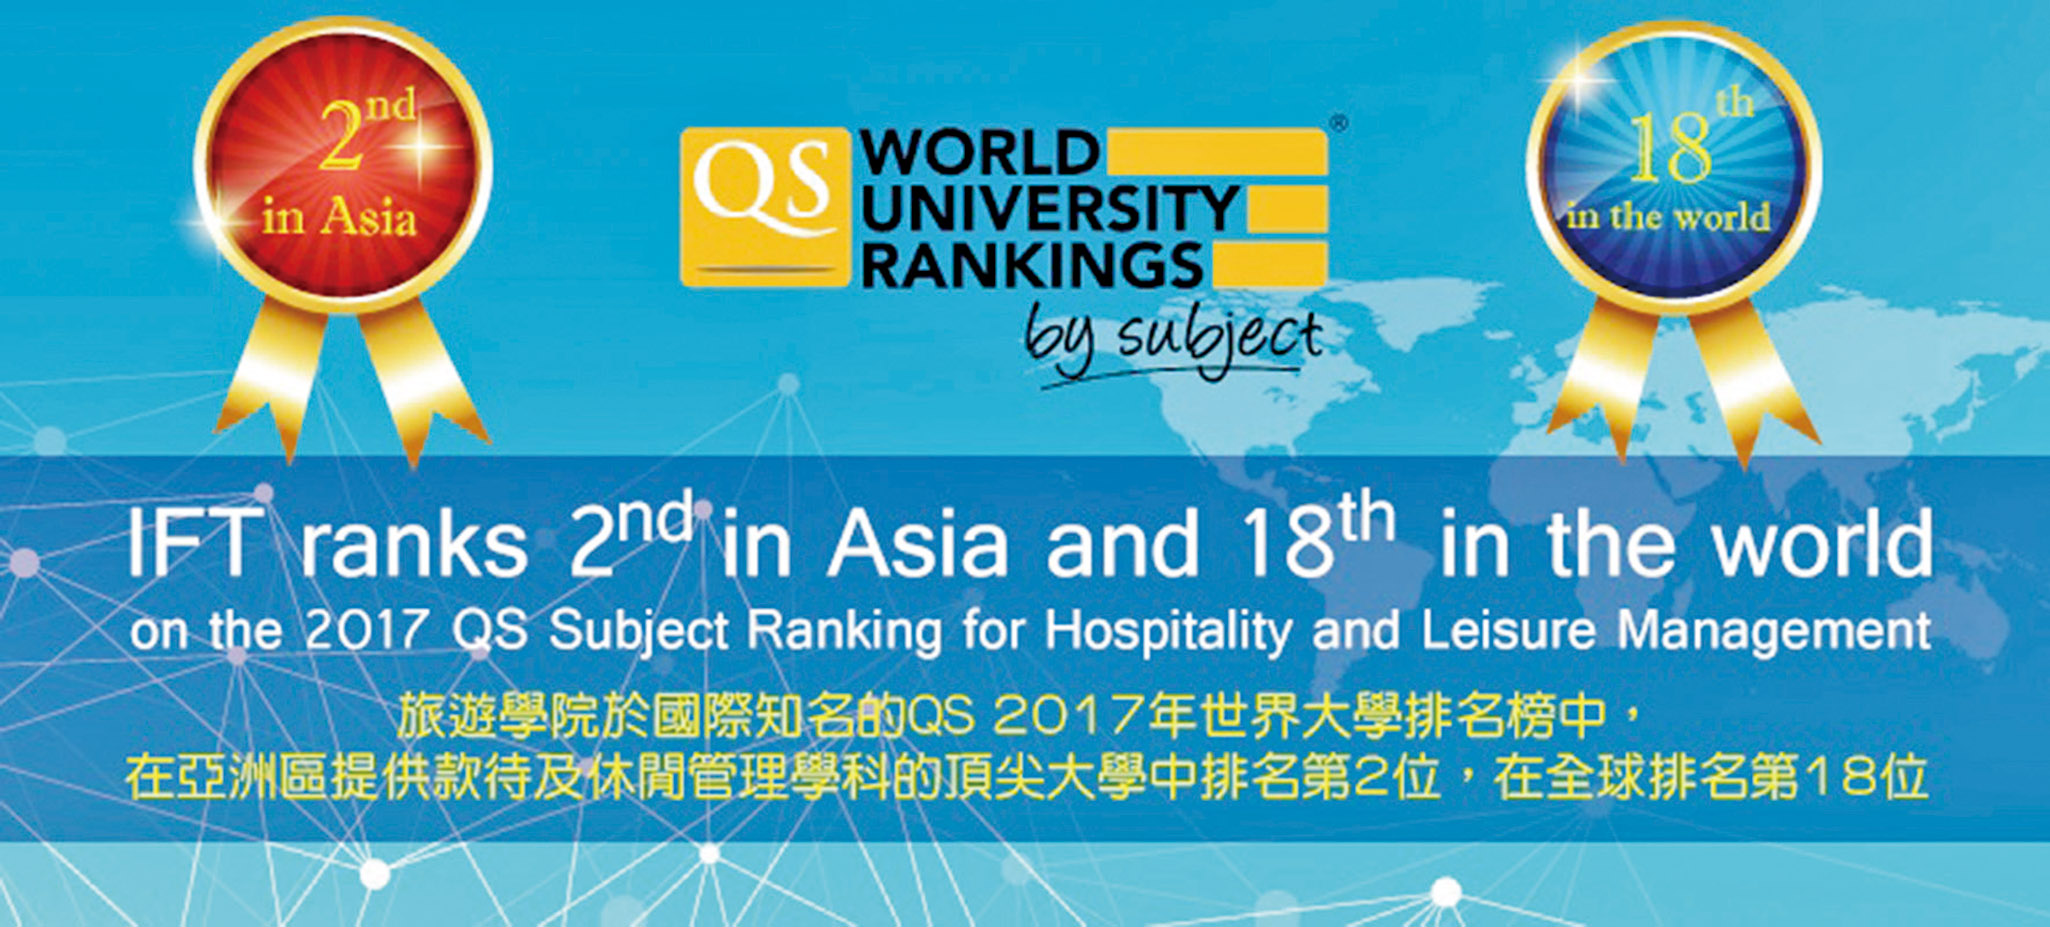 旅院QS世界大學排名亞洲第二